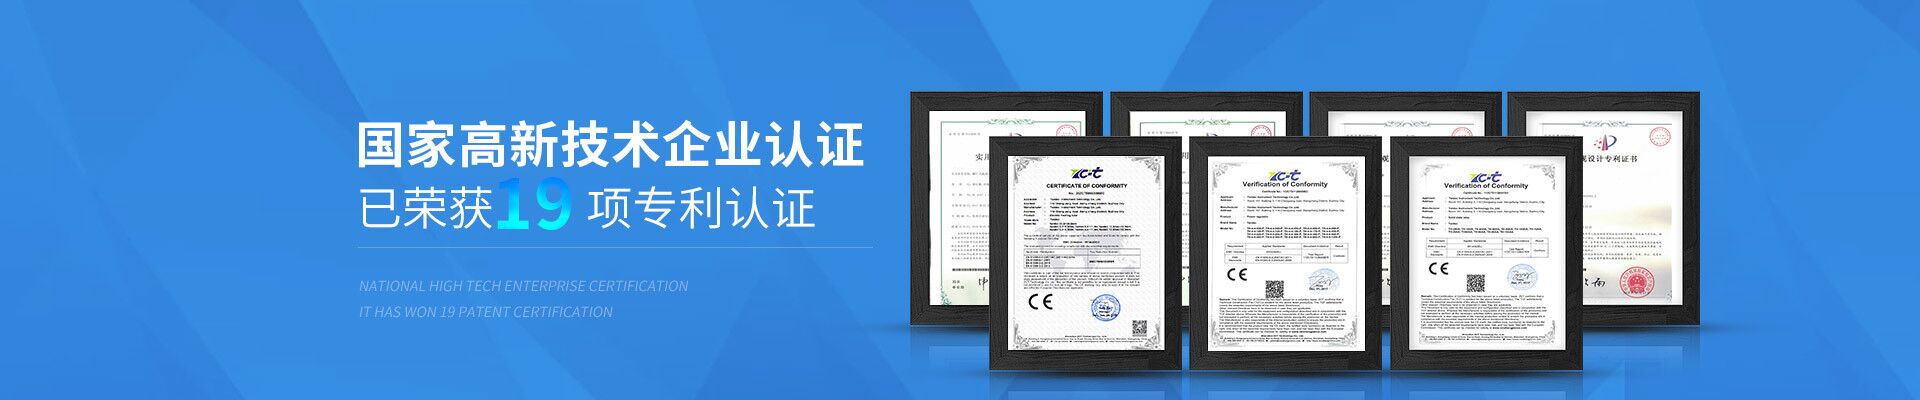 合泉Twidec国家高新技术企业认证